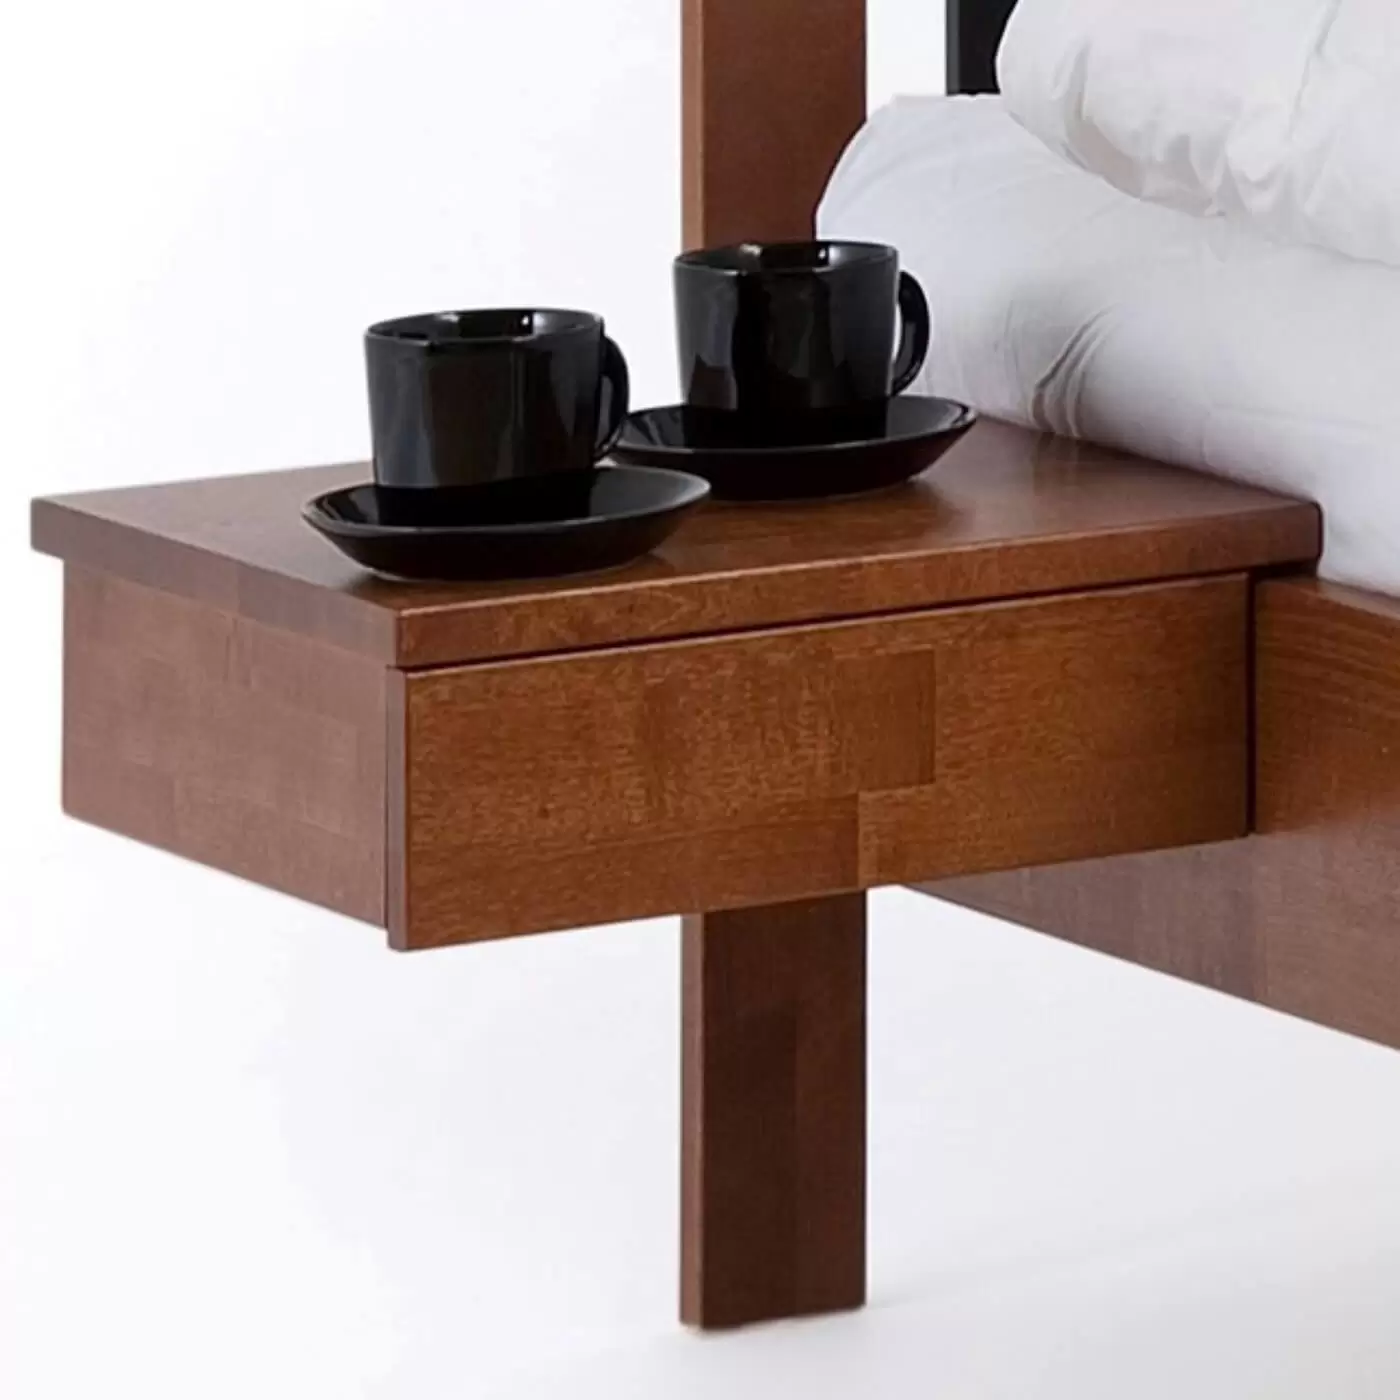 Stolik nocny orzech KOLI drewniany z szufladą. Przywieszony przy łóżku widoczny w dużym przybliżeniu. Na stoliku wiszącym z drewna w kolorze orzech widać stojące 2 czarne filiżanki. Nowoczesny skandynawski design